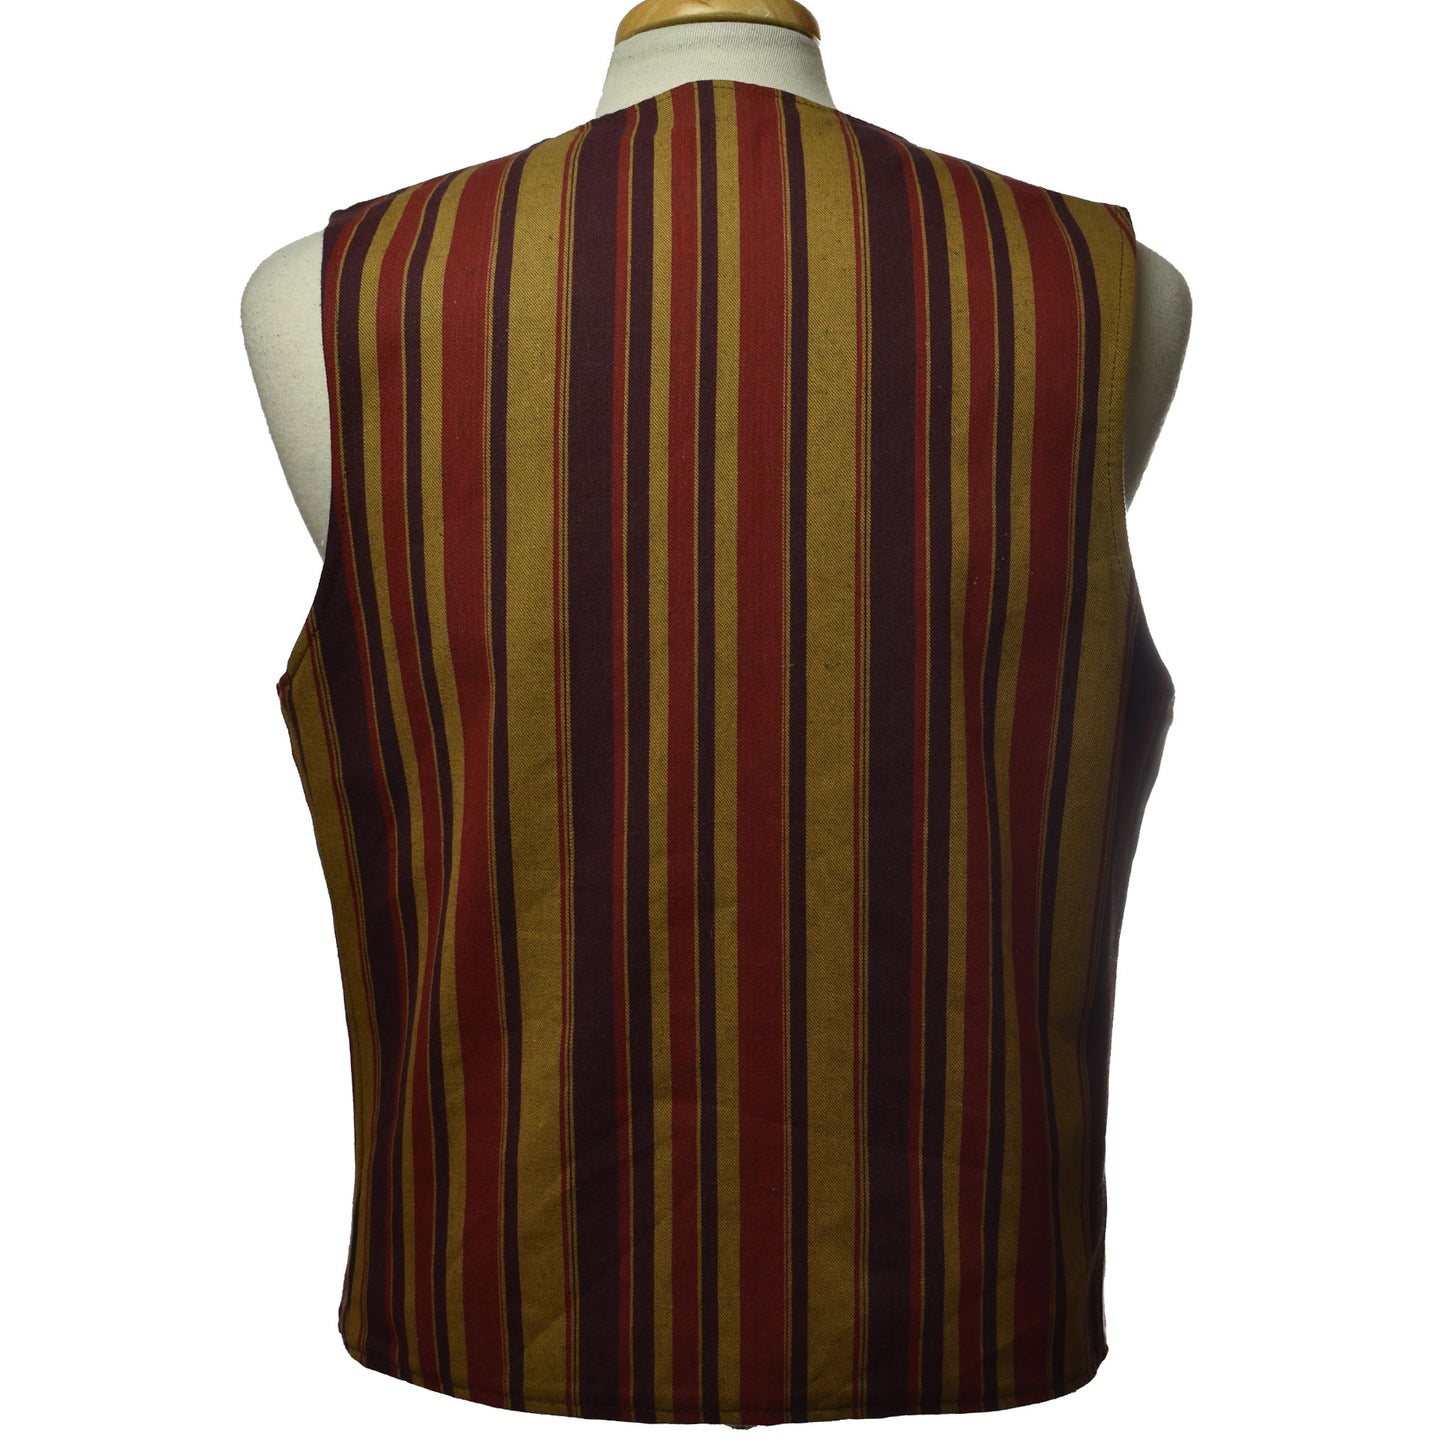 Vintage 1960s Big E Levi's Reversible Denim / Striped Vest with Leather Tie